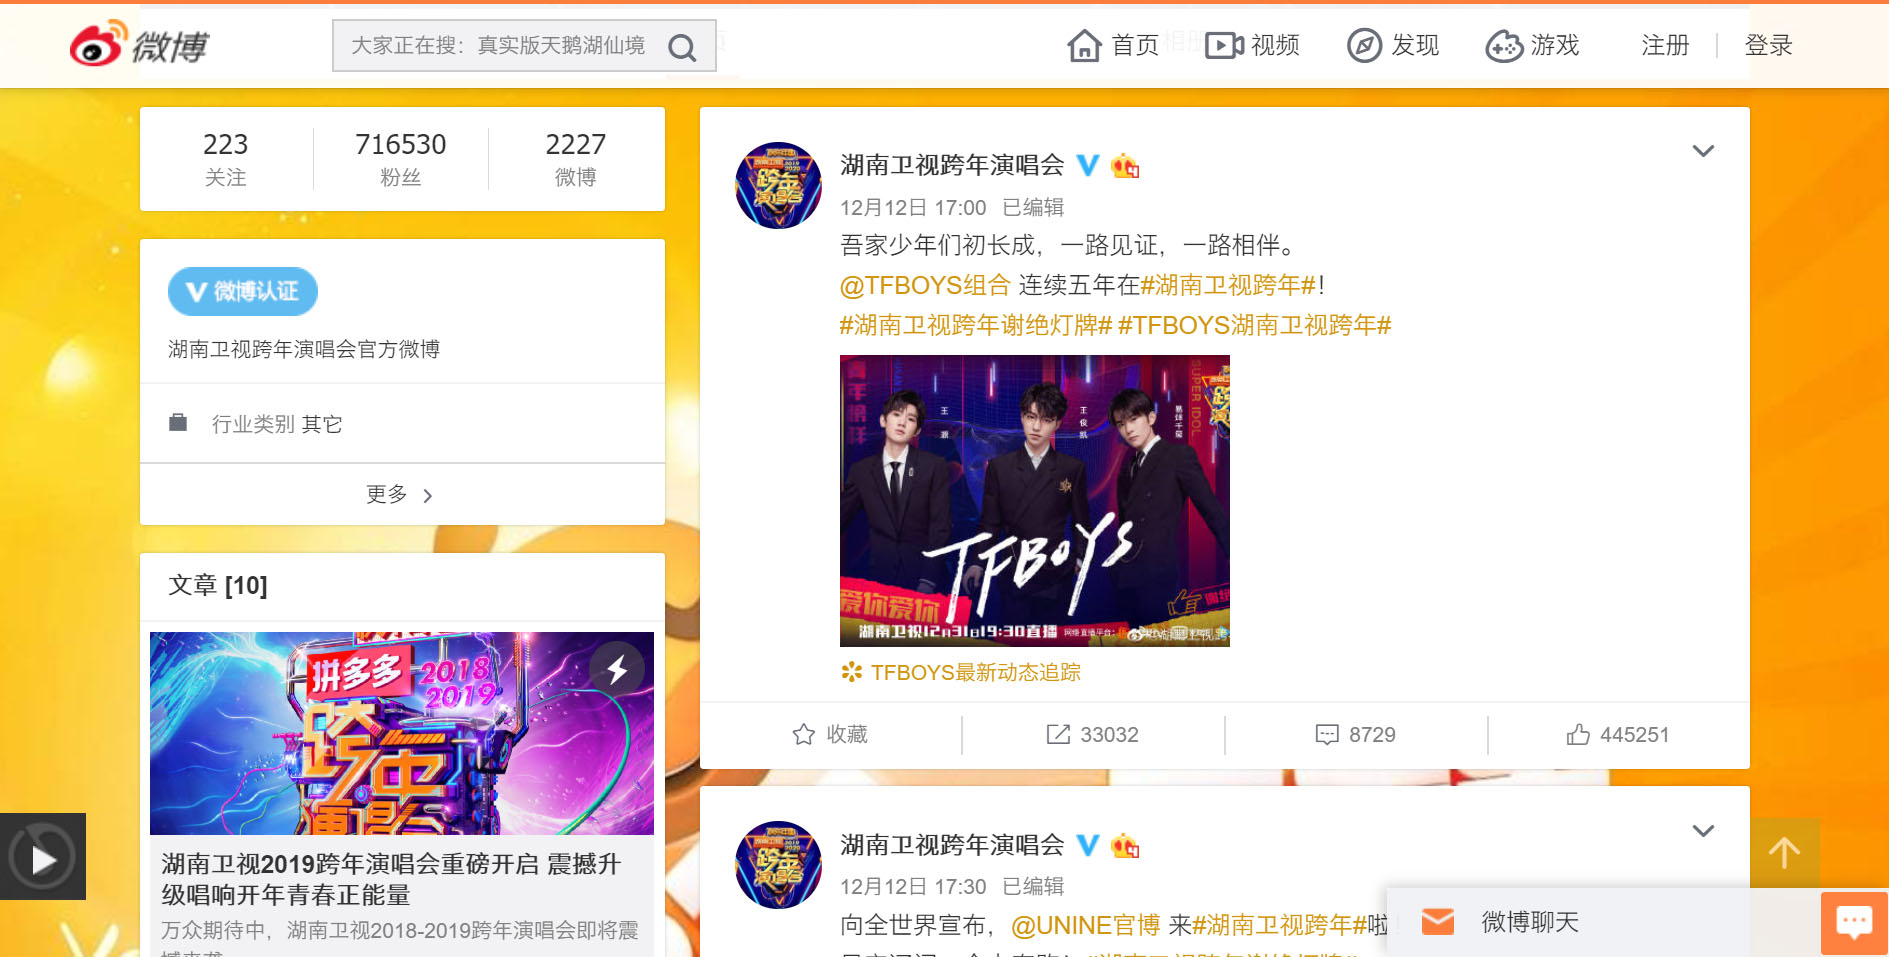 Hunan TV New Year’s Eve Show 2019-2020 Weibo